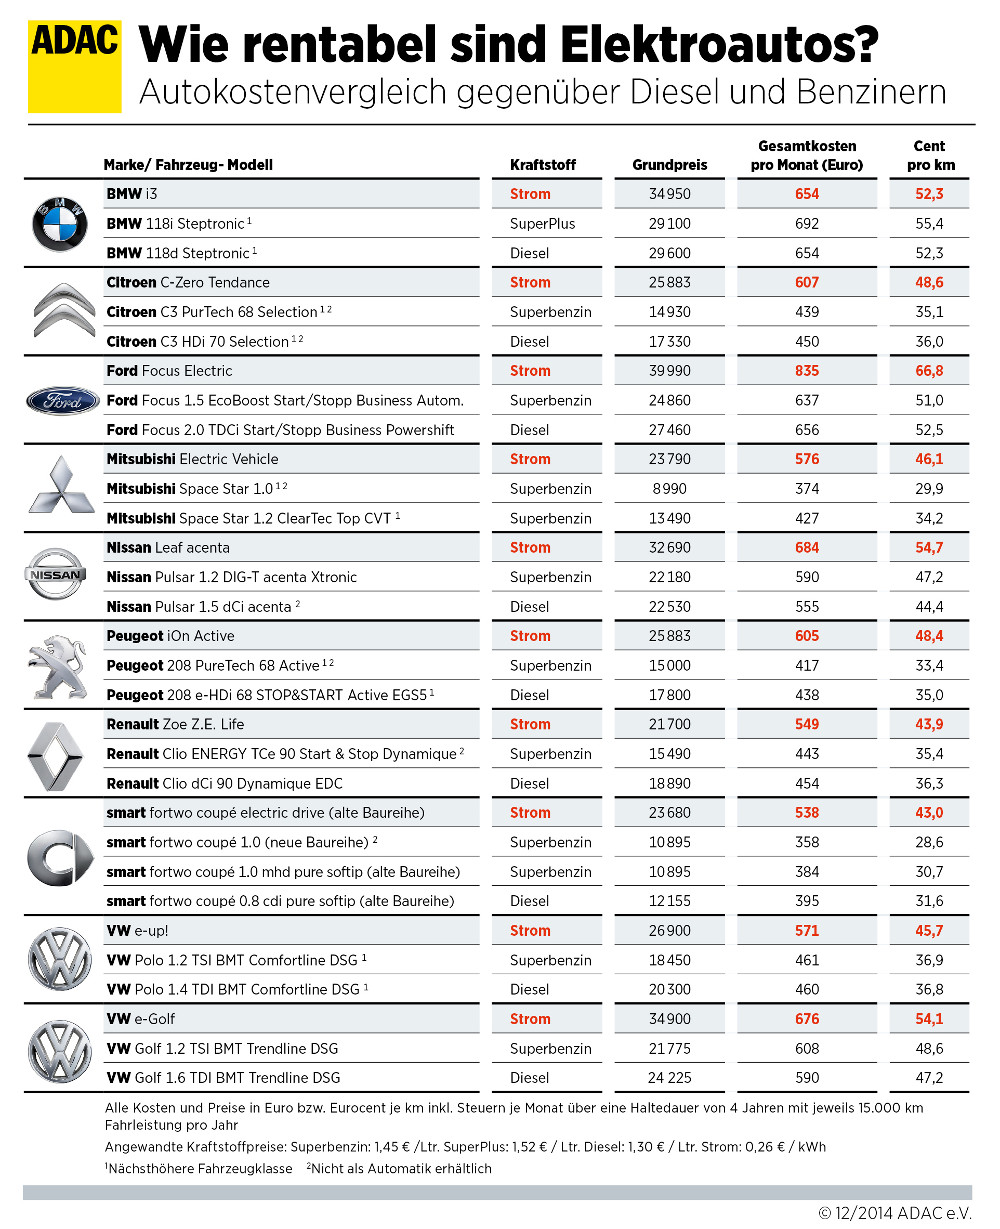 ADAC Elektroauto Kostenvergleich 2015